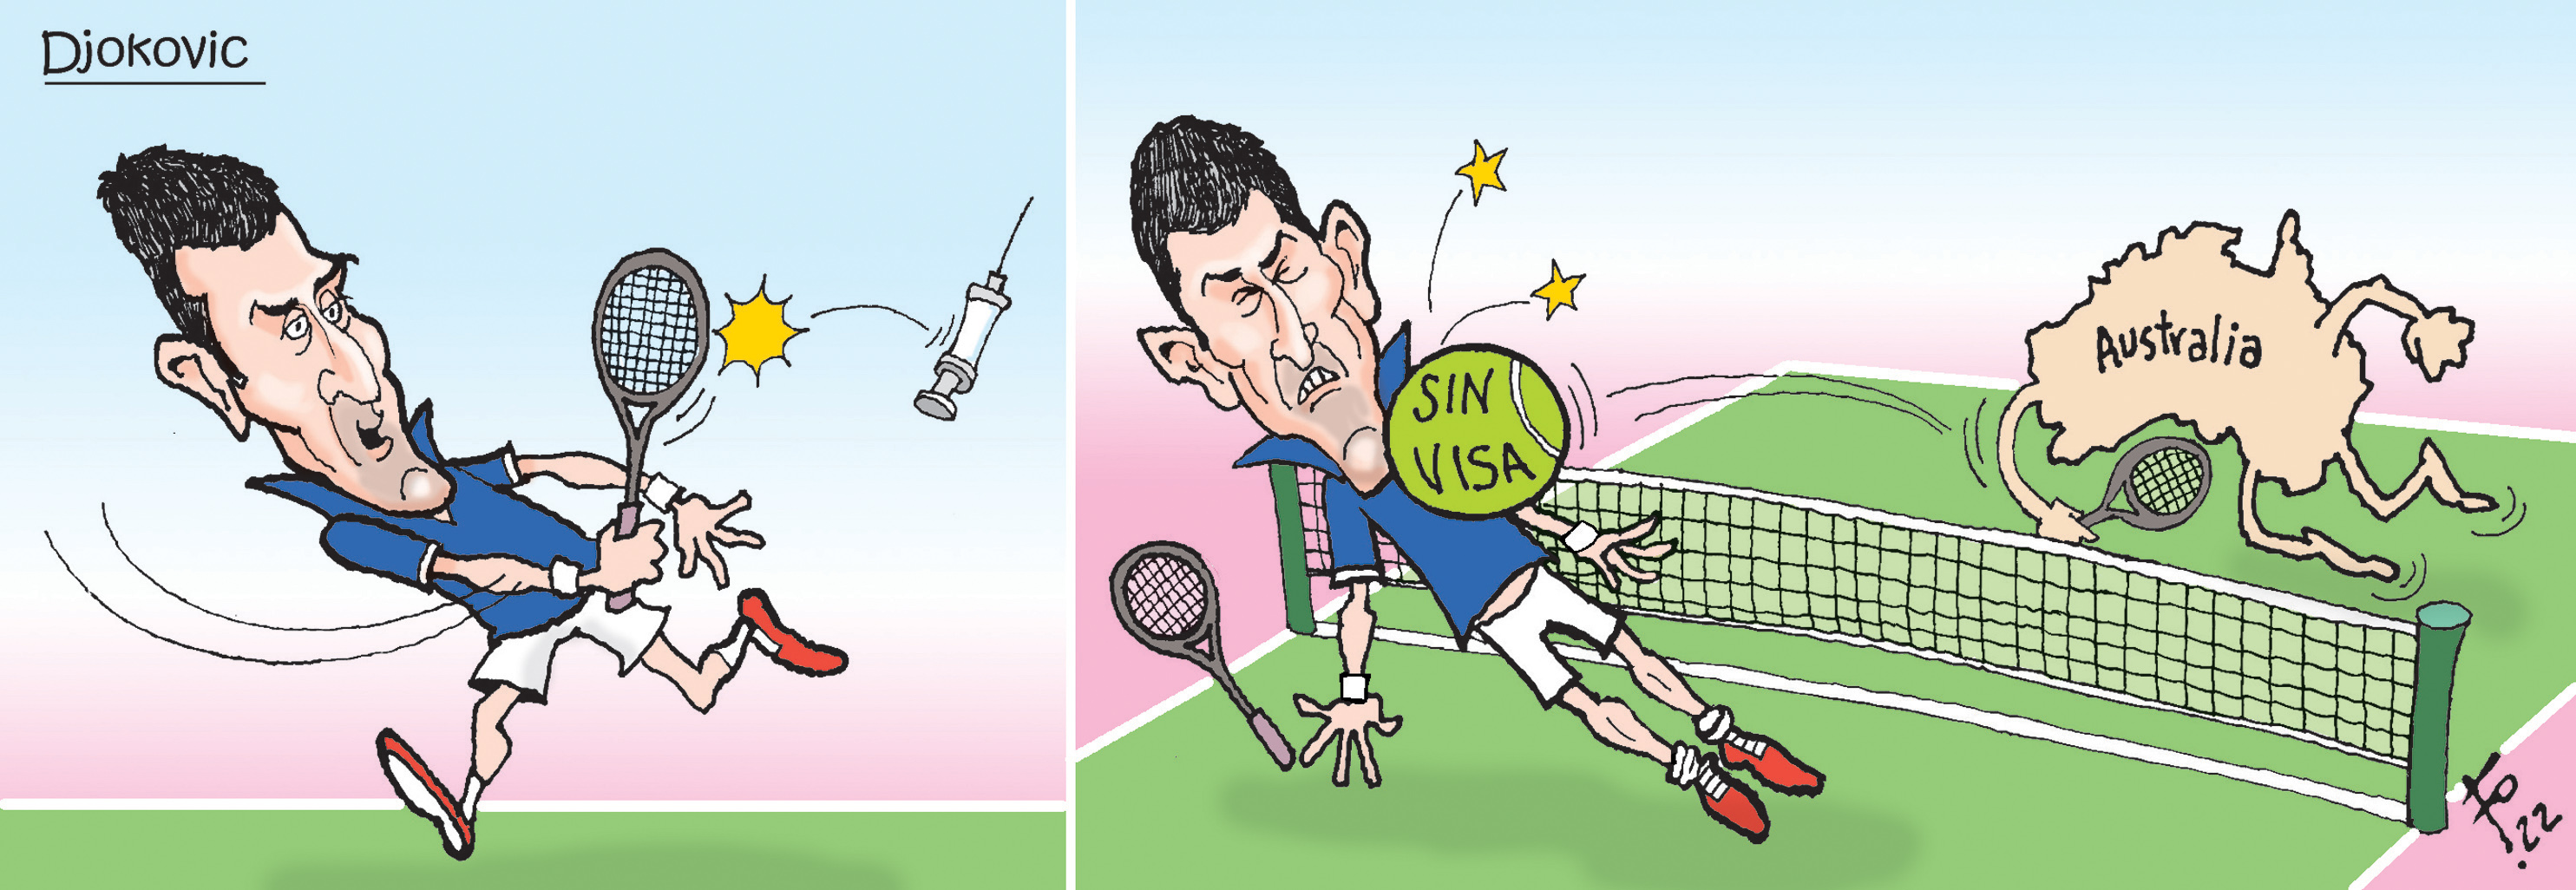 Personaje: Novak Djokovic.